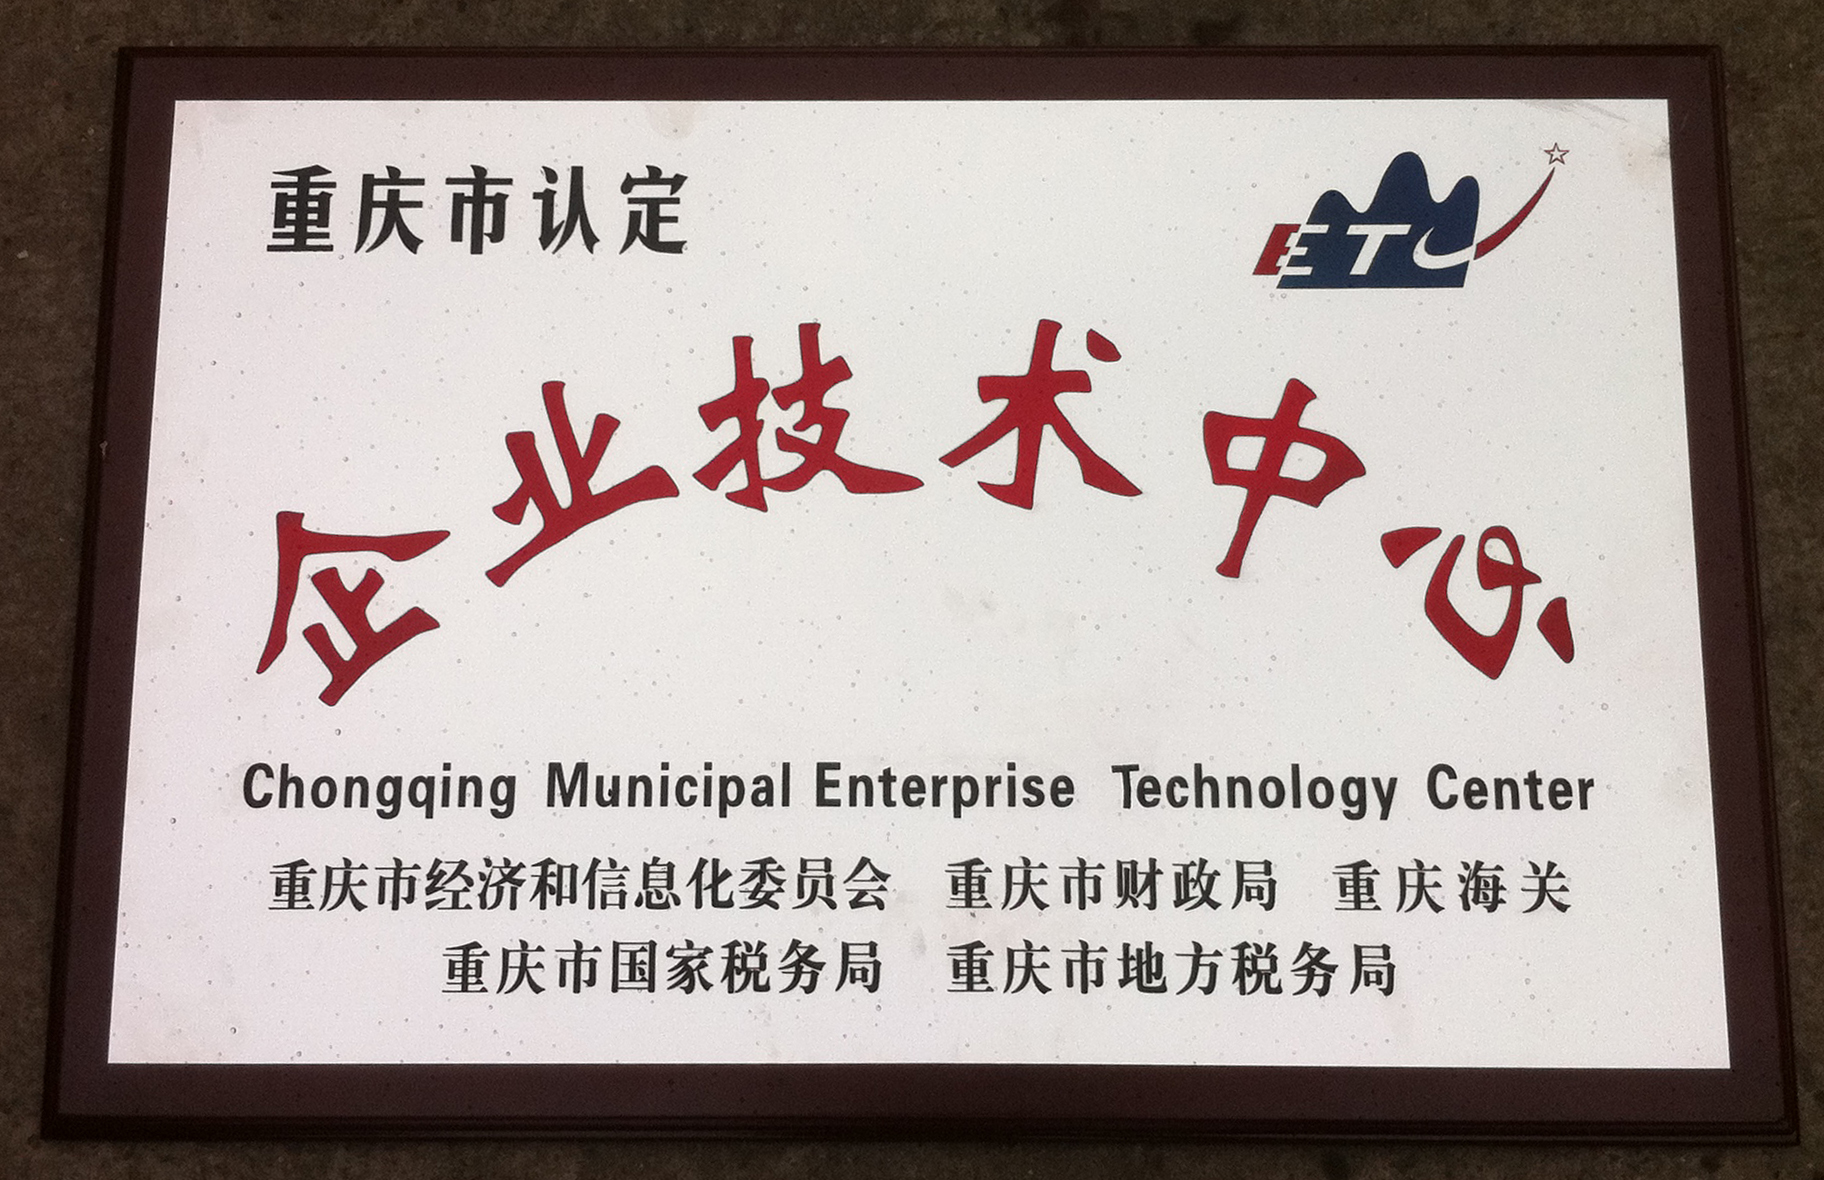 Chongqing Municipal Enterprise Technology Center